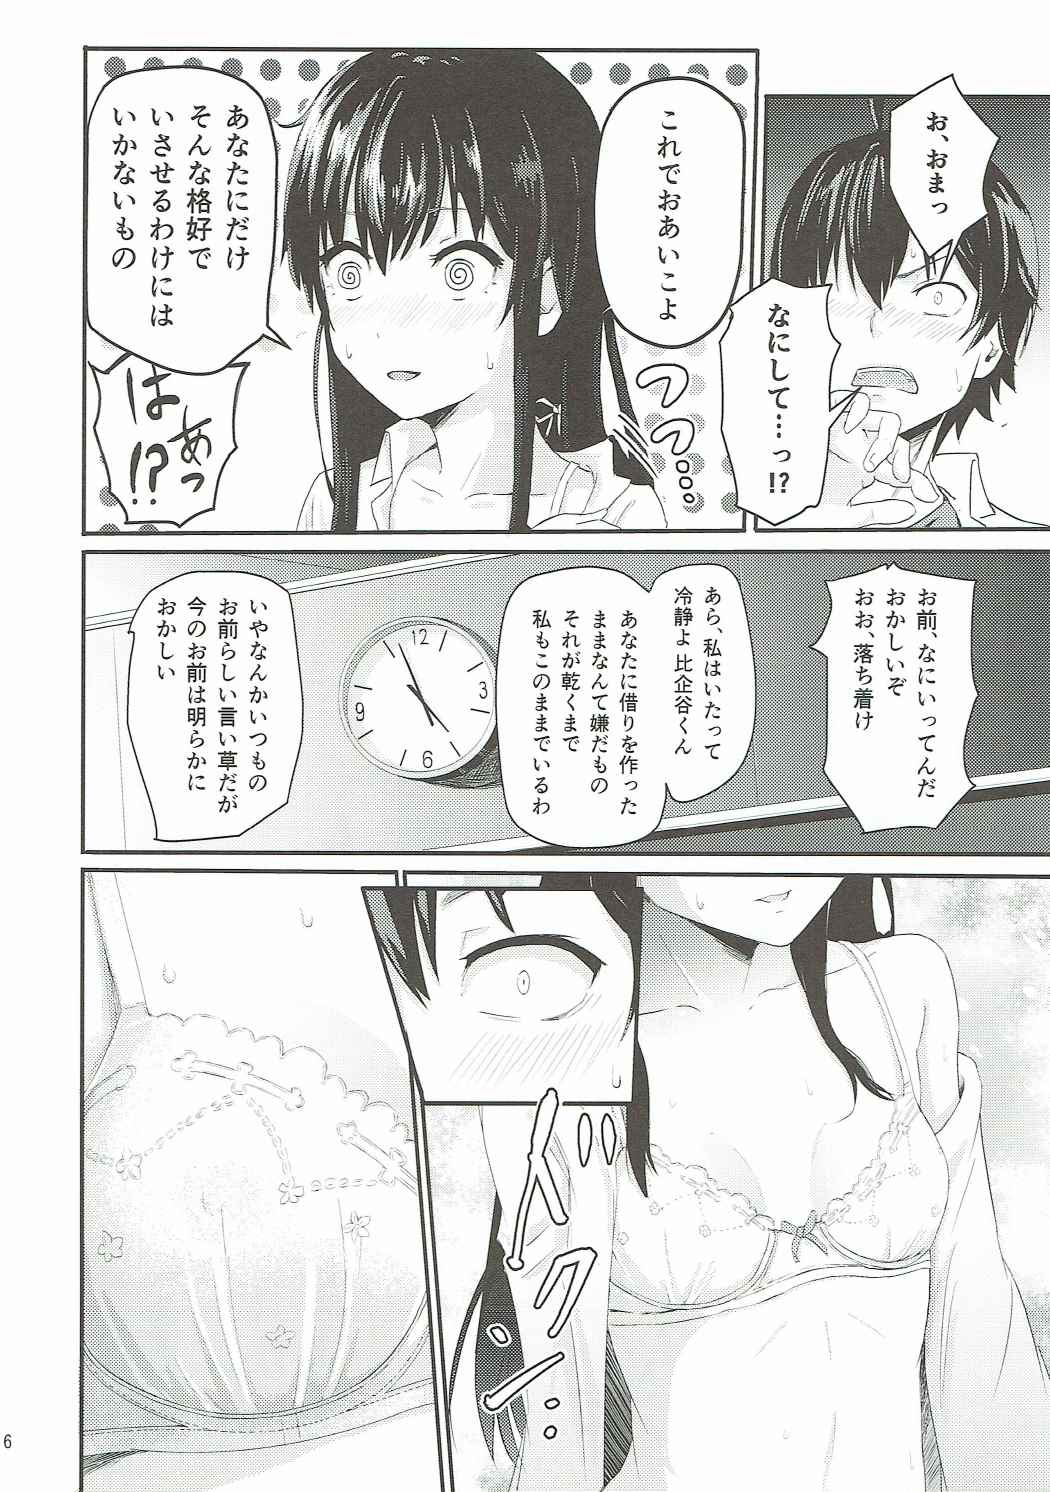 (サンクリ2016 Autumn) [シュクリーン (シュクリーン)] Yukino ～Reverse～ (やはり俺の青春ラブコメはまちがっている。)